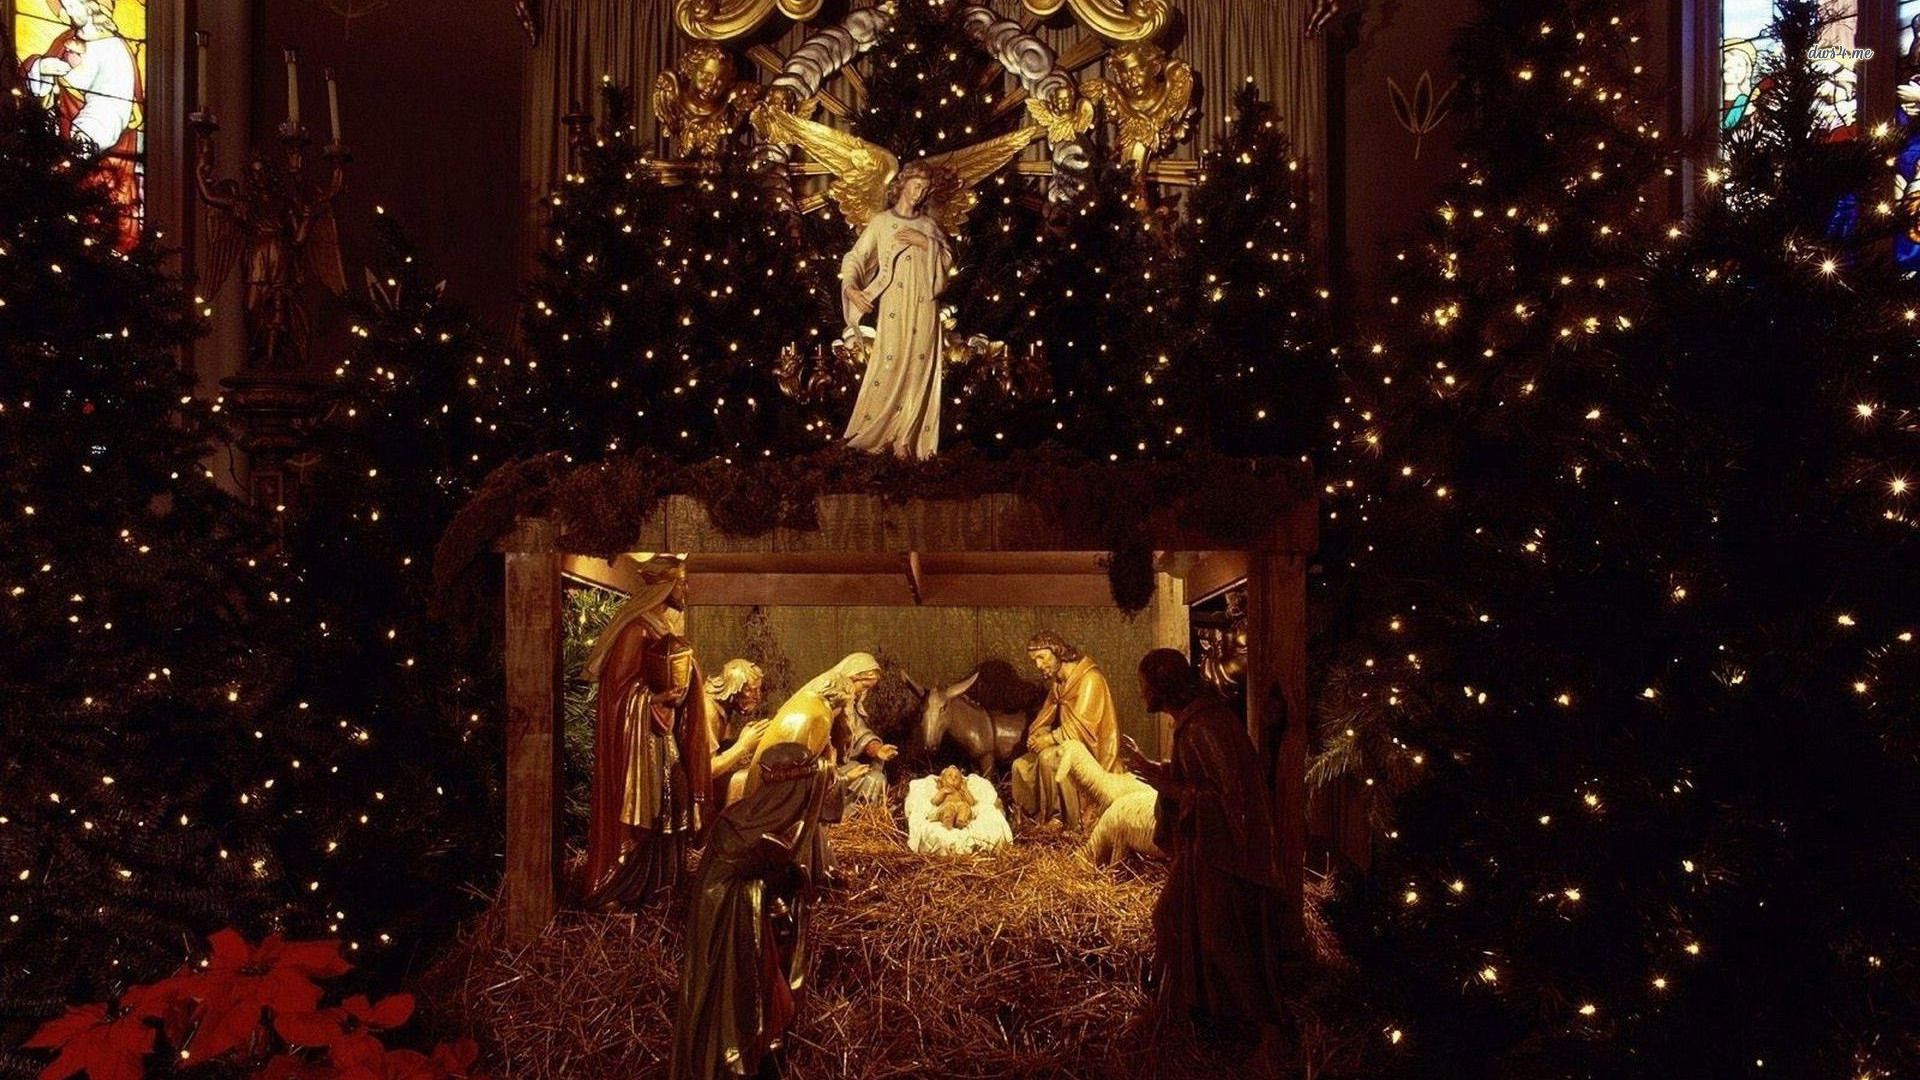 3D Manger Scene Wallpaper. Nativity Scene Christmas Wallpaper, Nativity Scene Art Wallpaper and Lady and the Tramp Spaghetti Scene Wallpaper